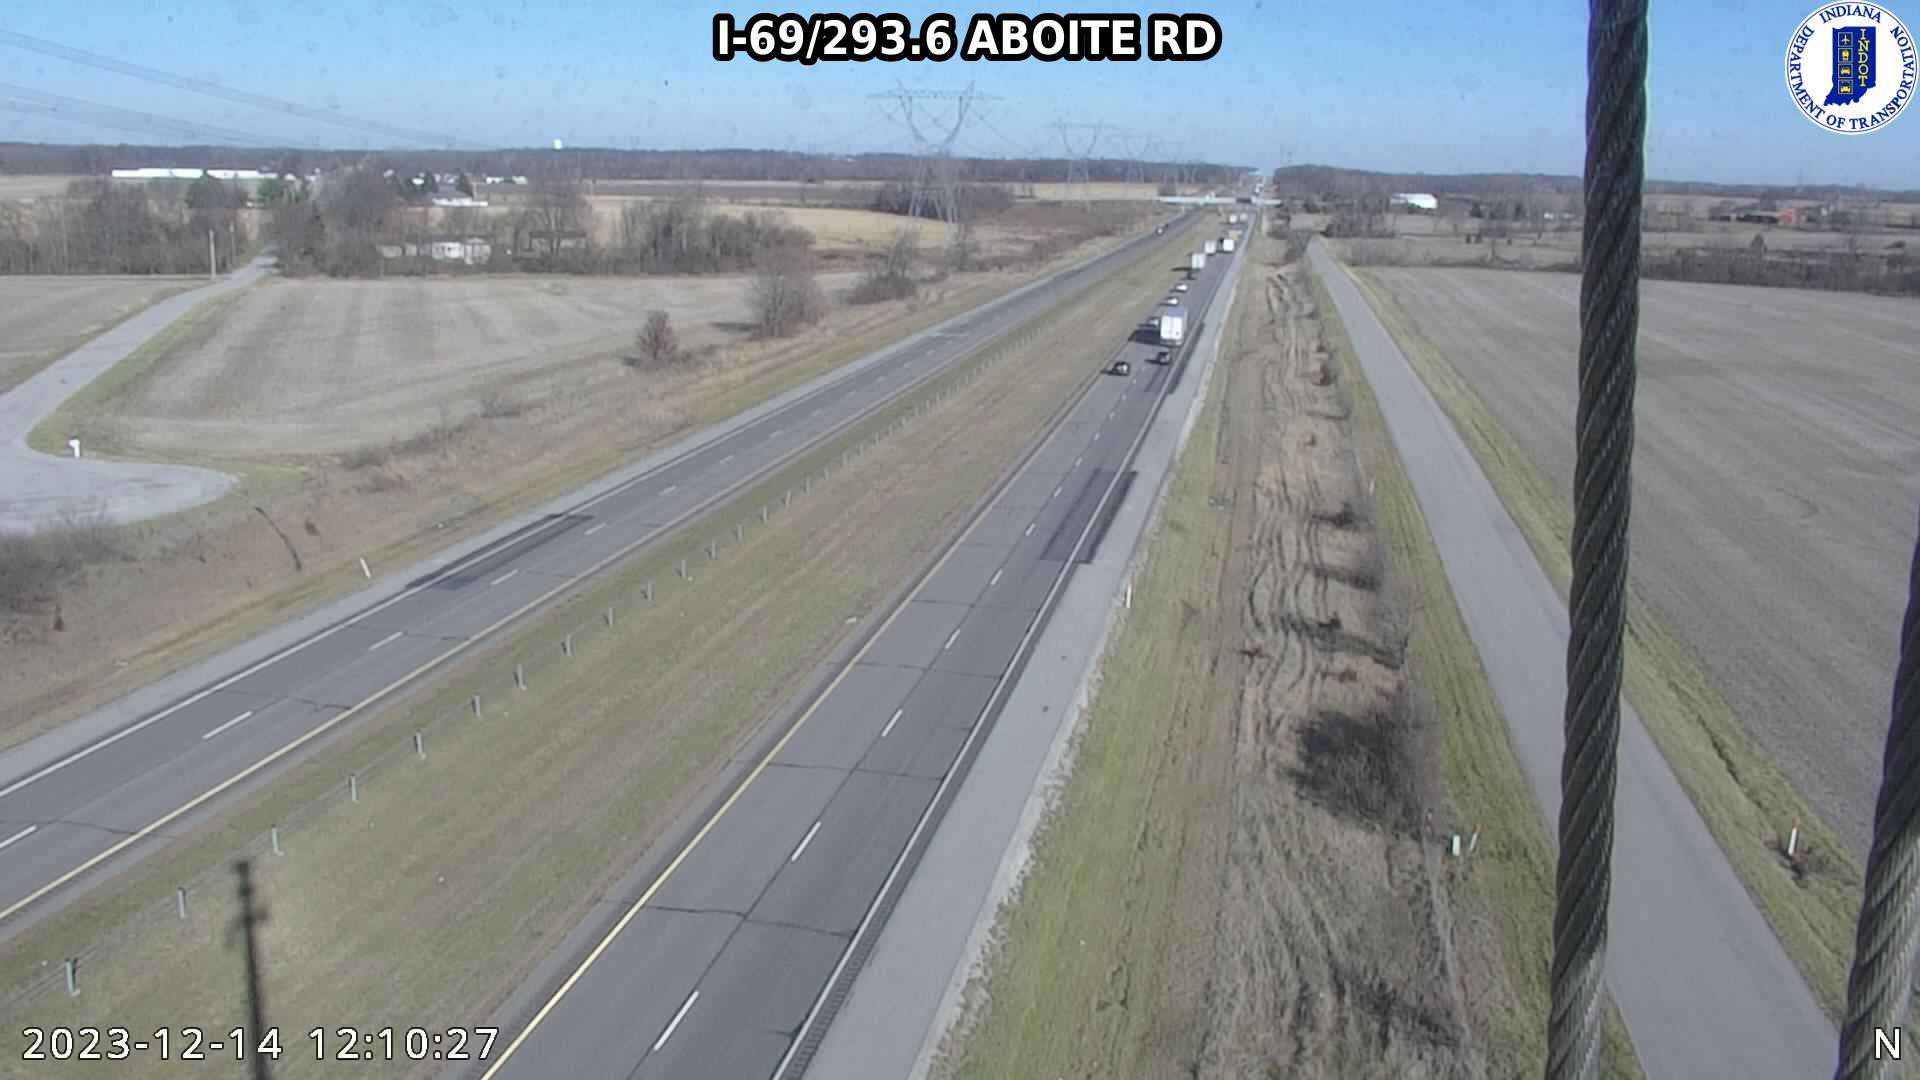 Zanesville: I-69: I-69/293.6 ABOITE RD: I-69/293.6 ABOITE RD Traffic Camera